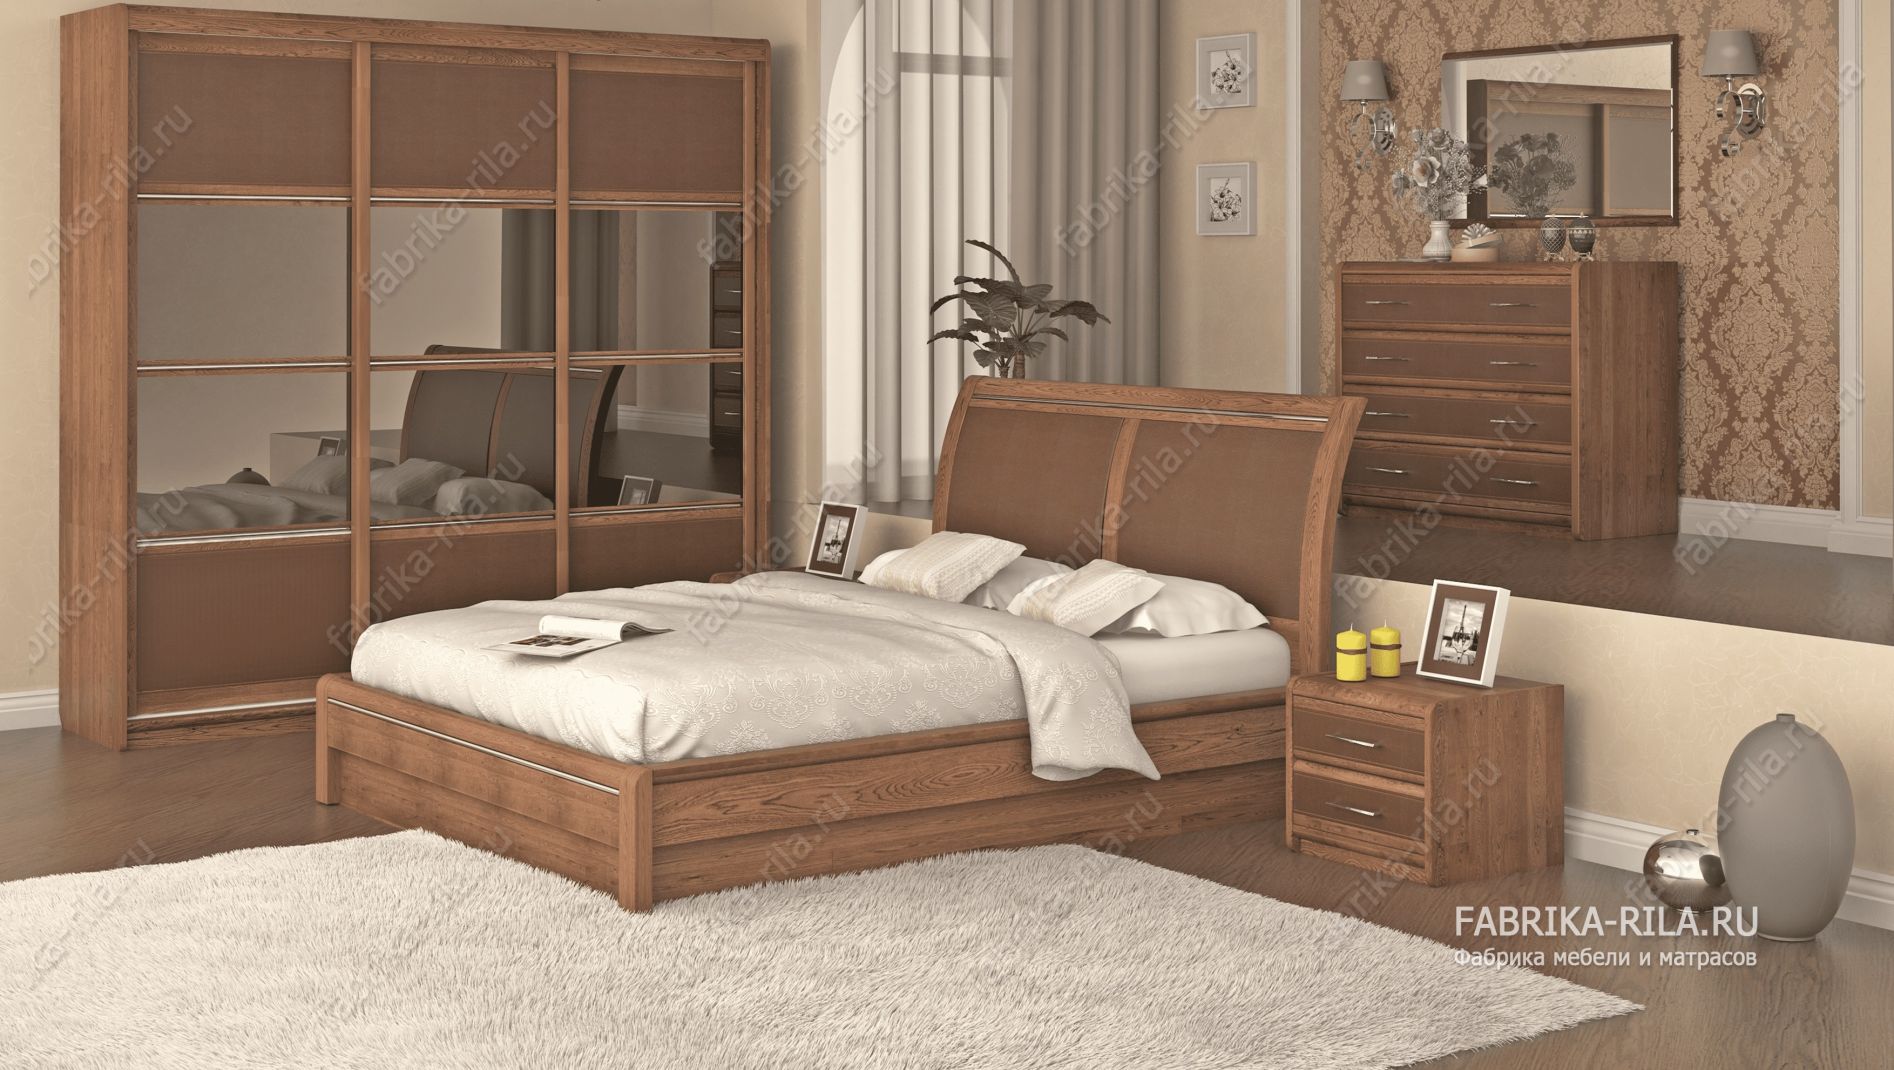 кровать Okaeri 6 см— 180x190 см. из сосны